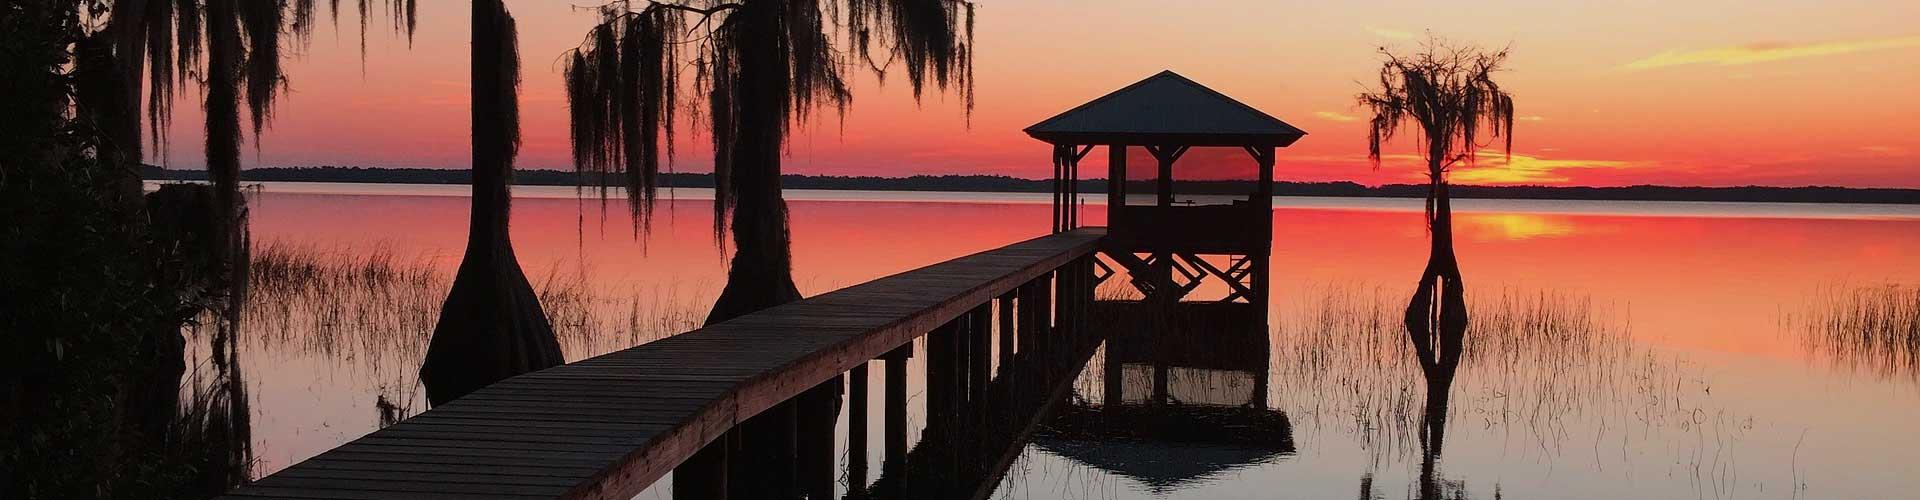 Florida lake sunset dock